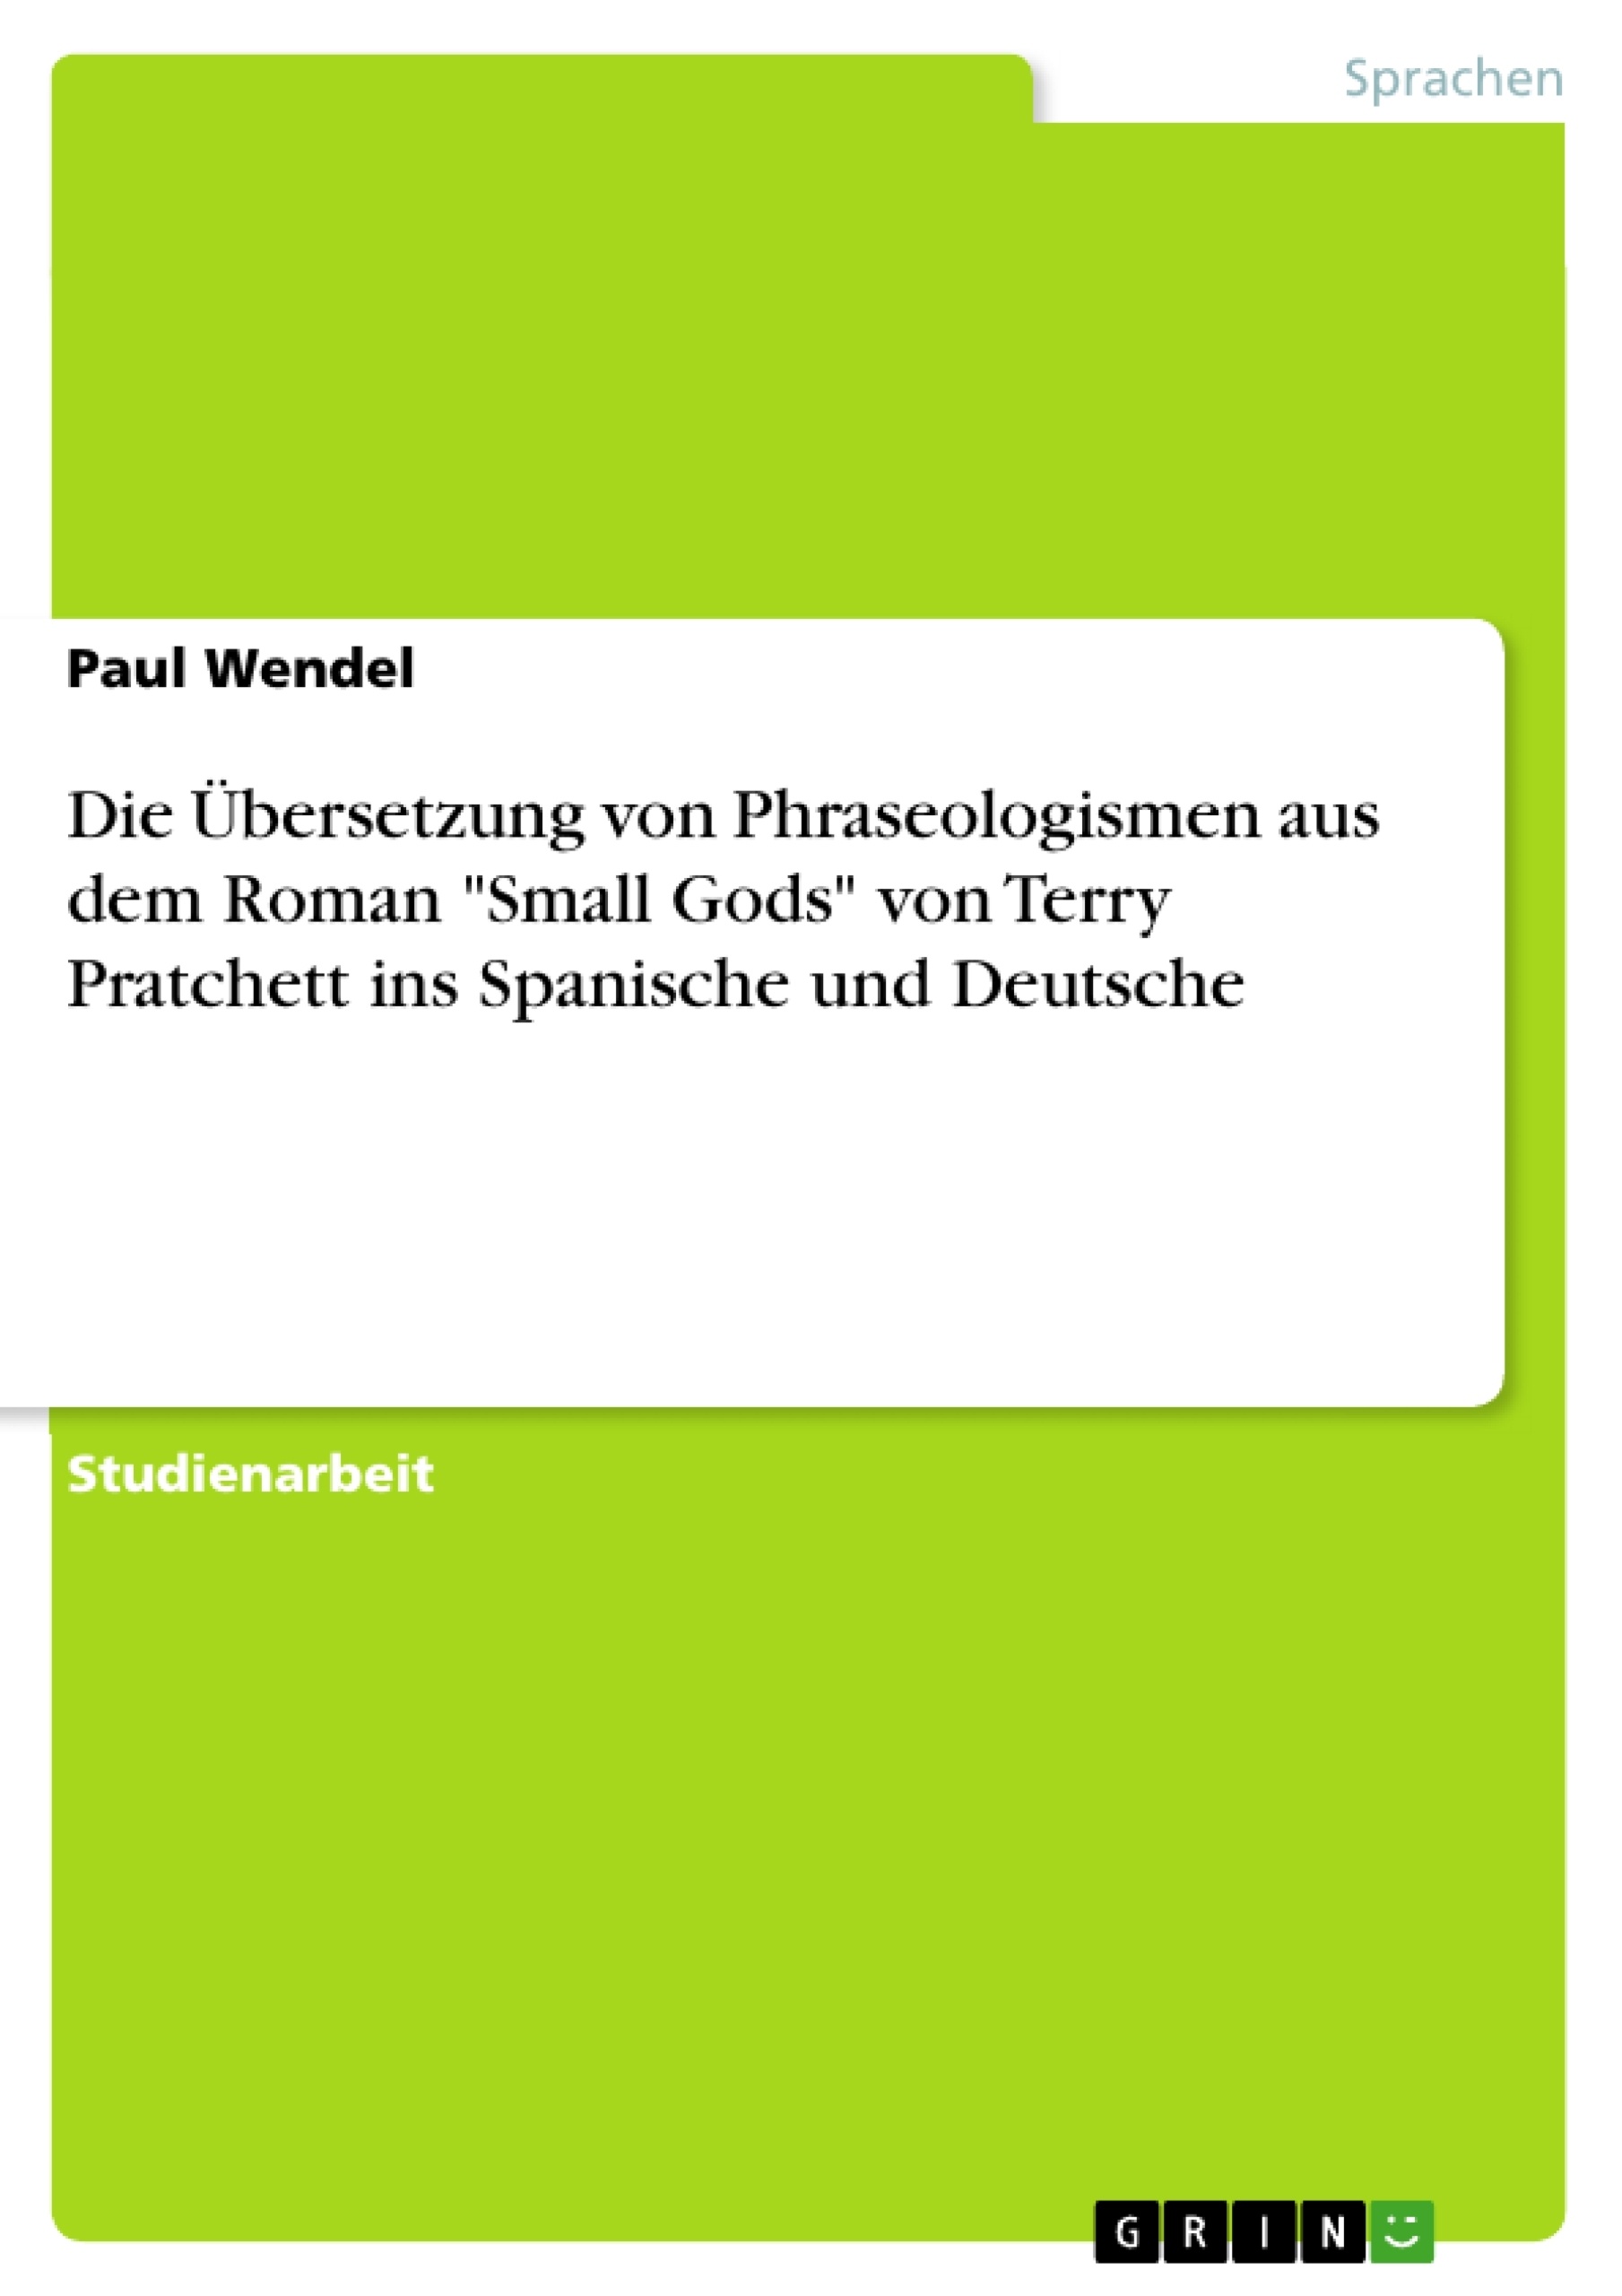 Título: Die Übersetzung von Phraseologismen  aus dem Roman "Small Gods" von Terry Pratchett ins Spanische und Deutsche